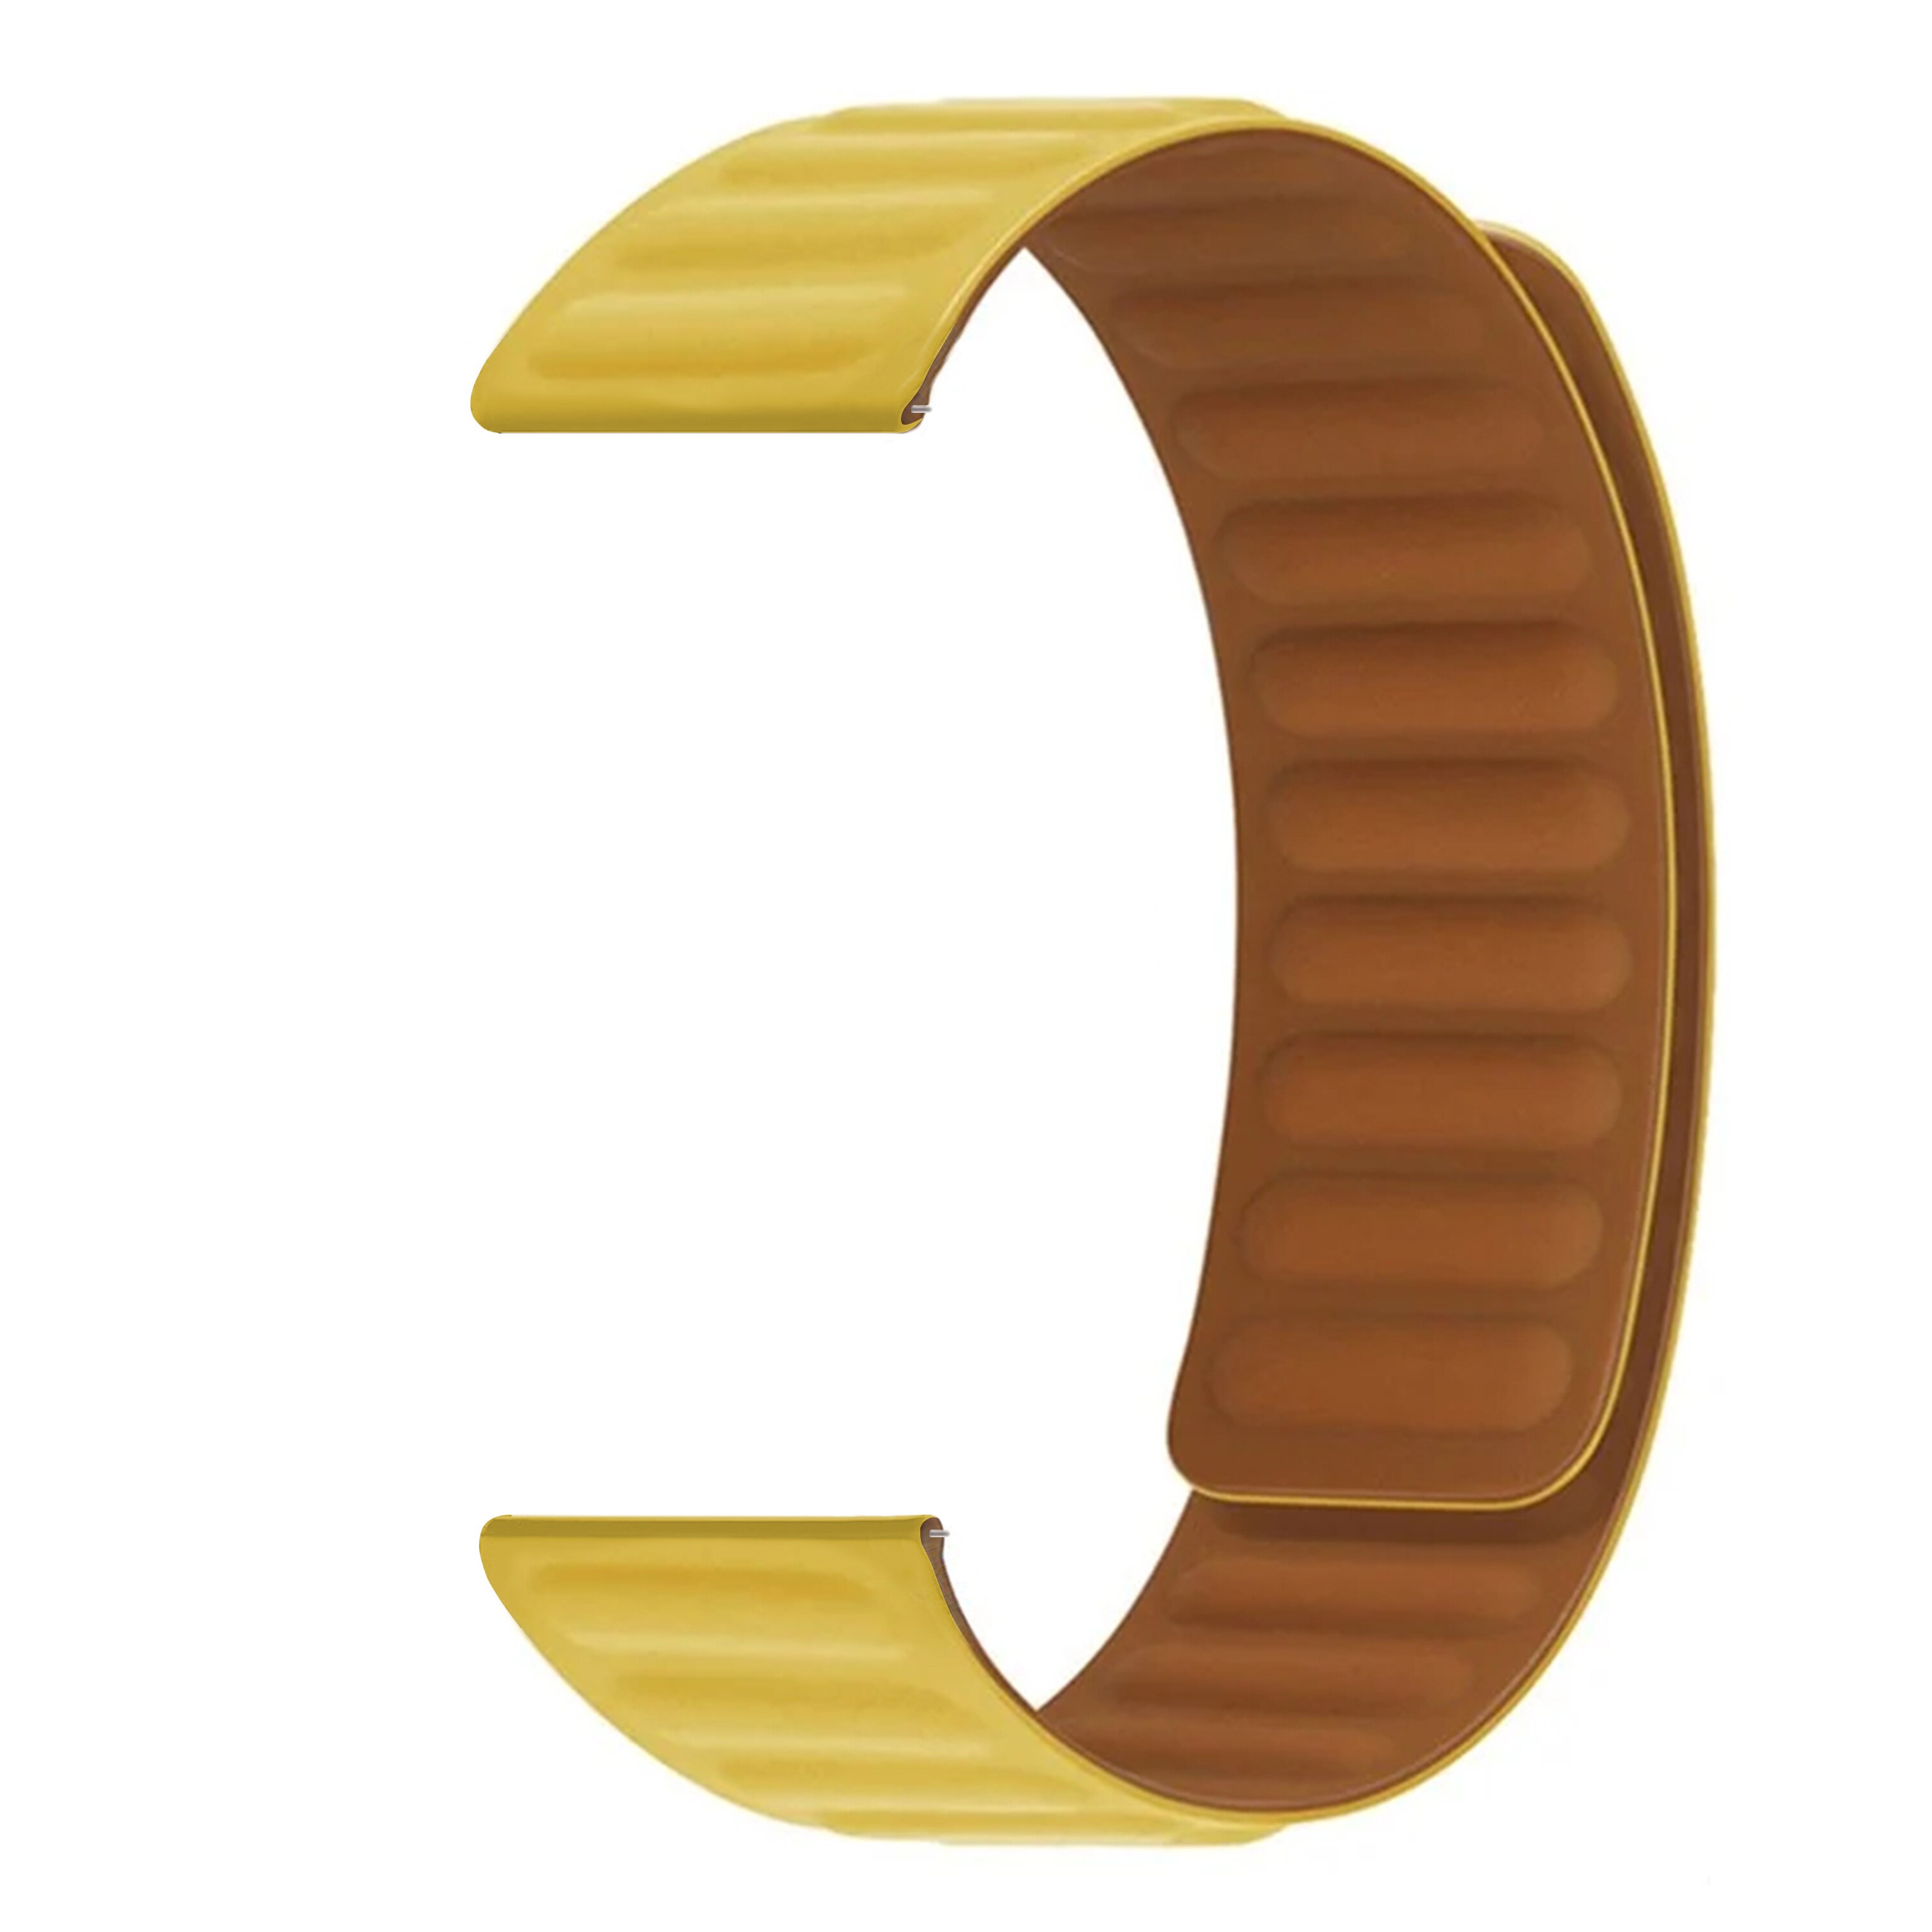 Universal 22mm Magnetische Armband aus Silikon gelb